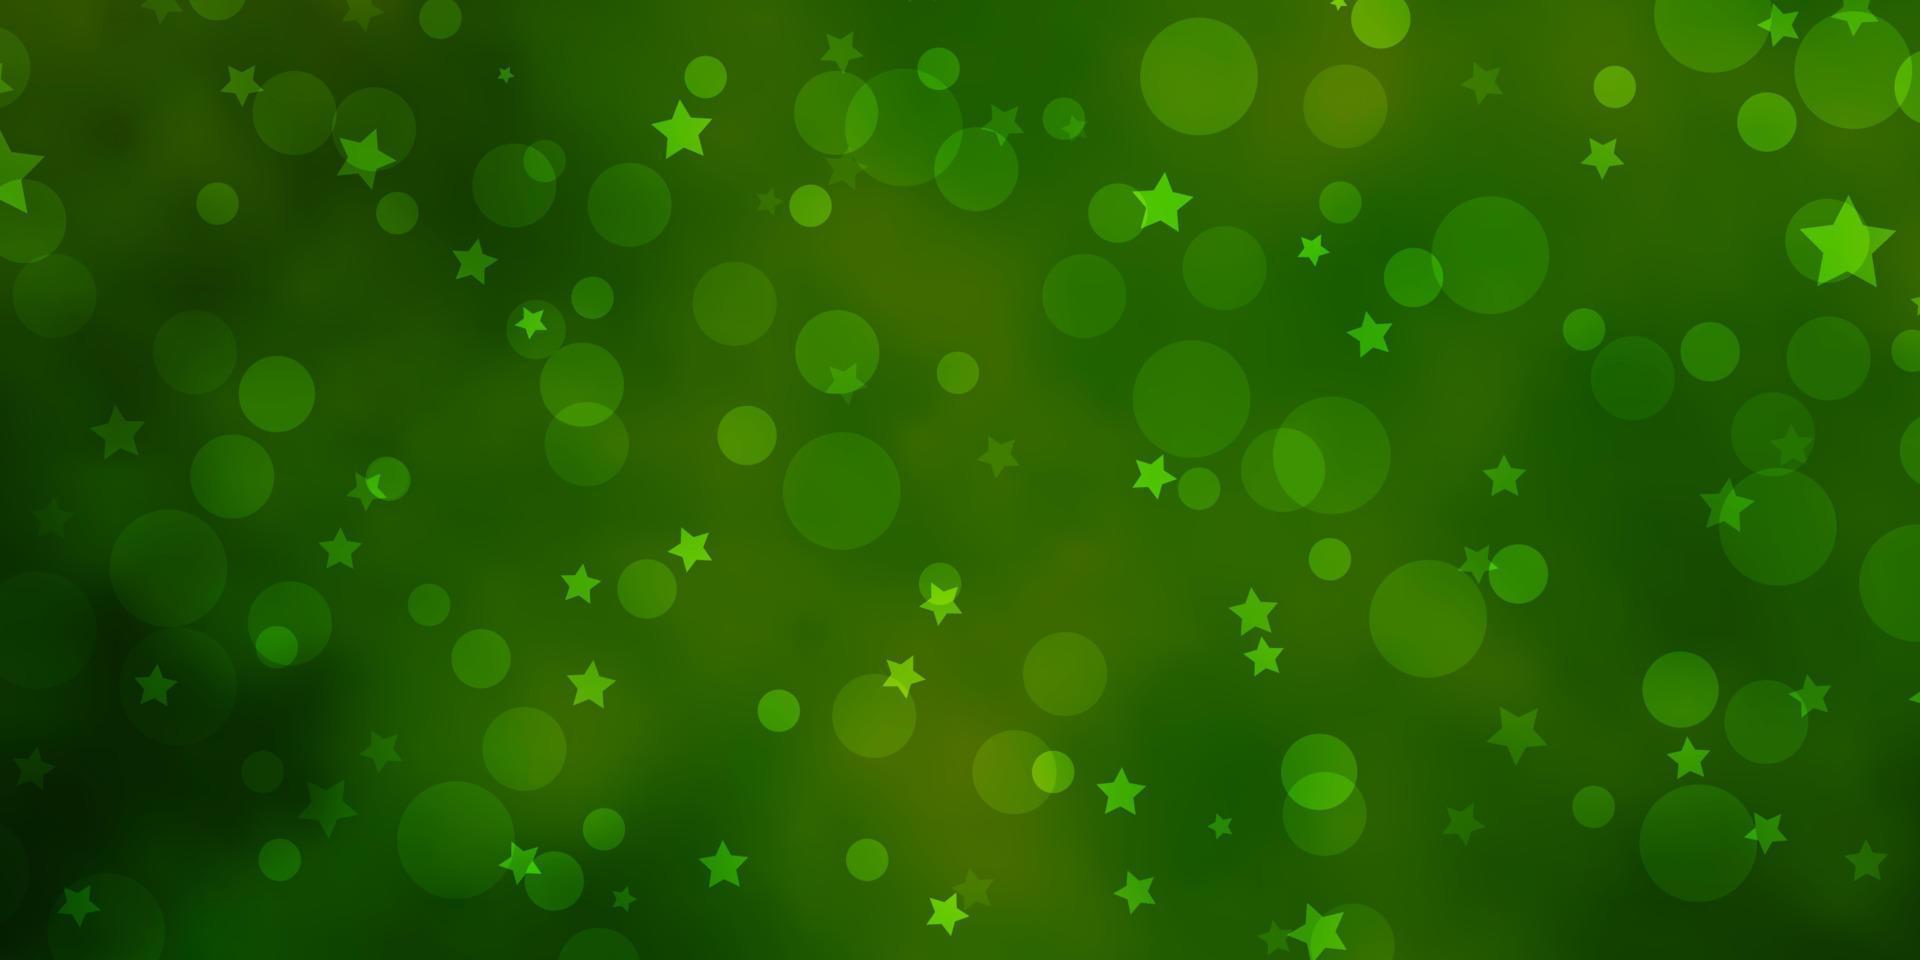 hellgrünes, gelbes Vektorlayout mit Kreisen, Sternen. vektor